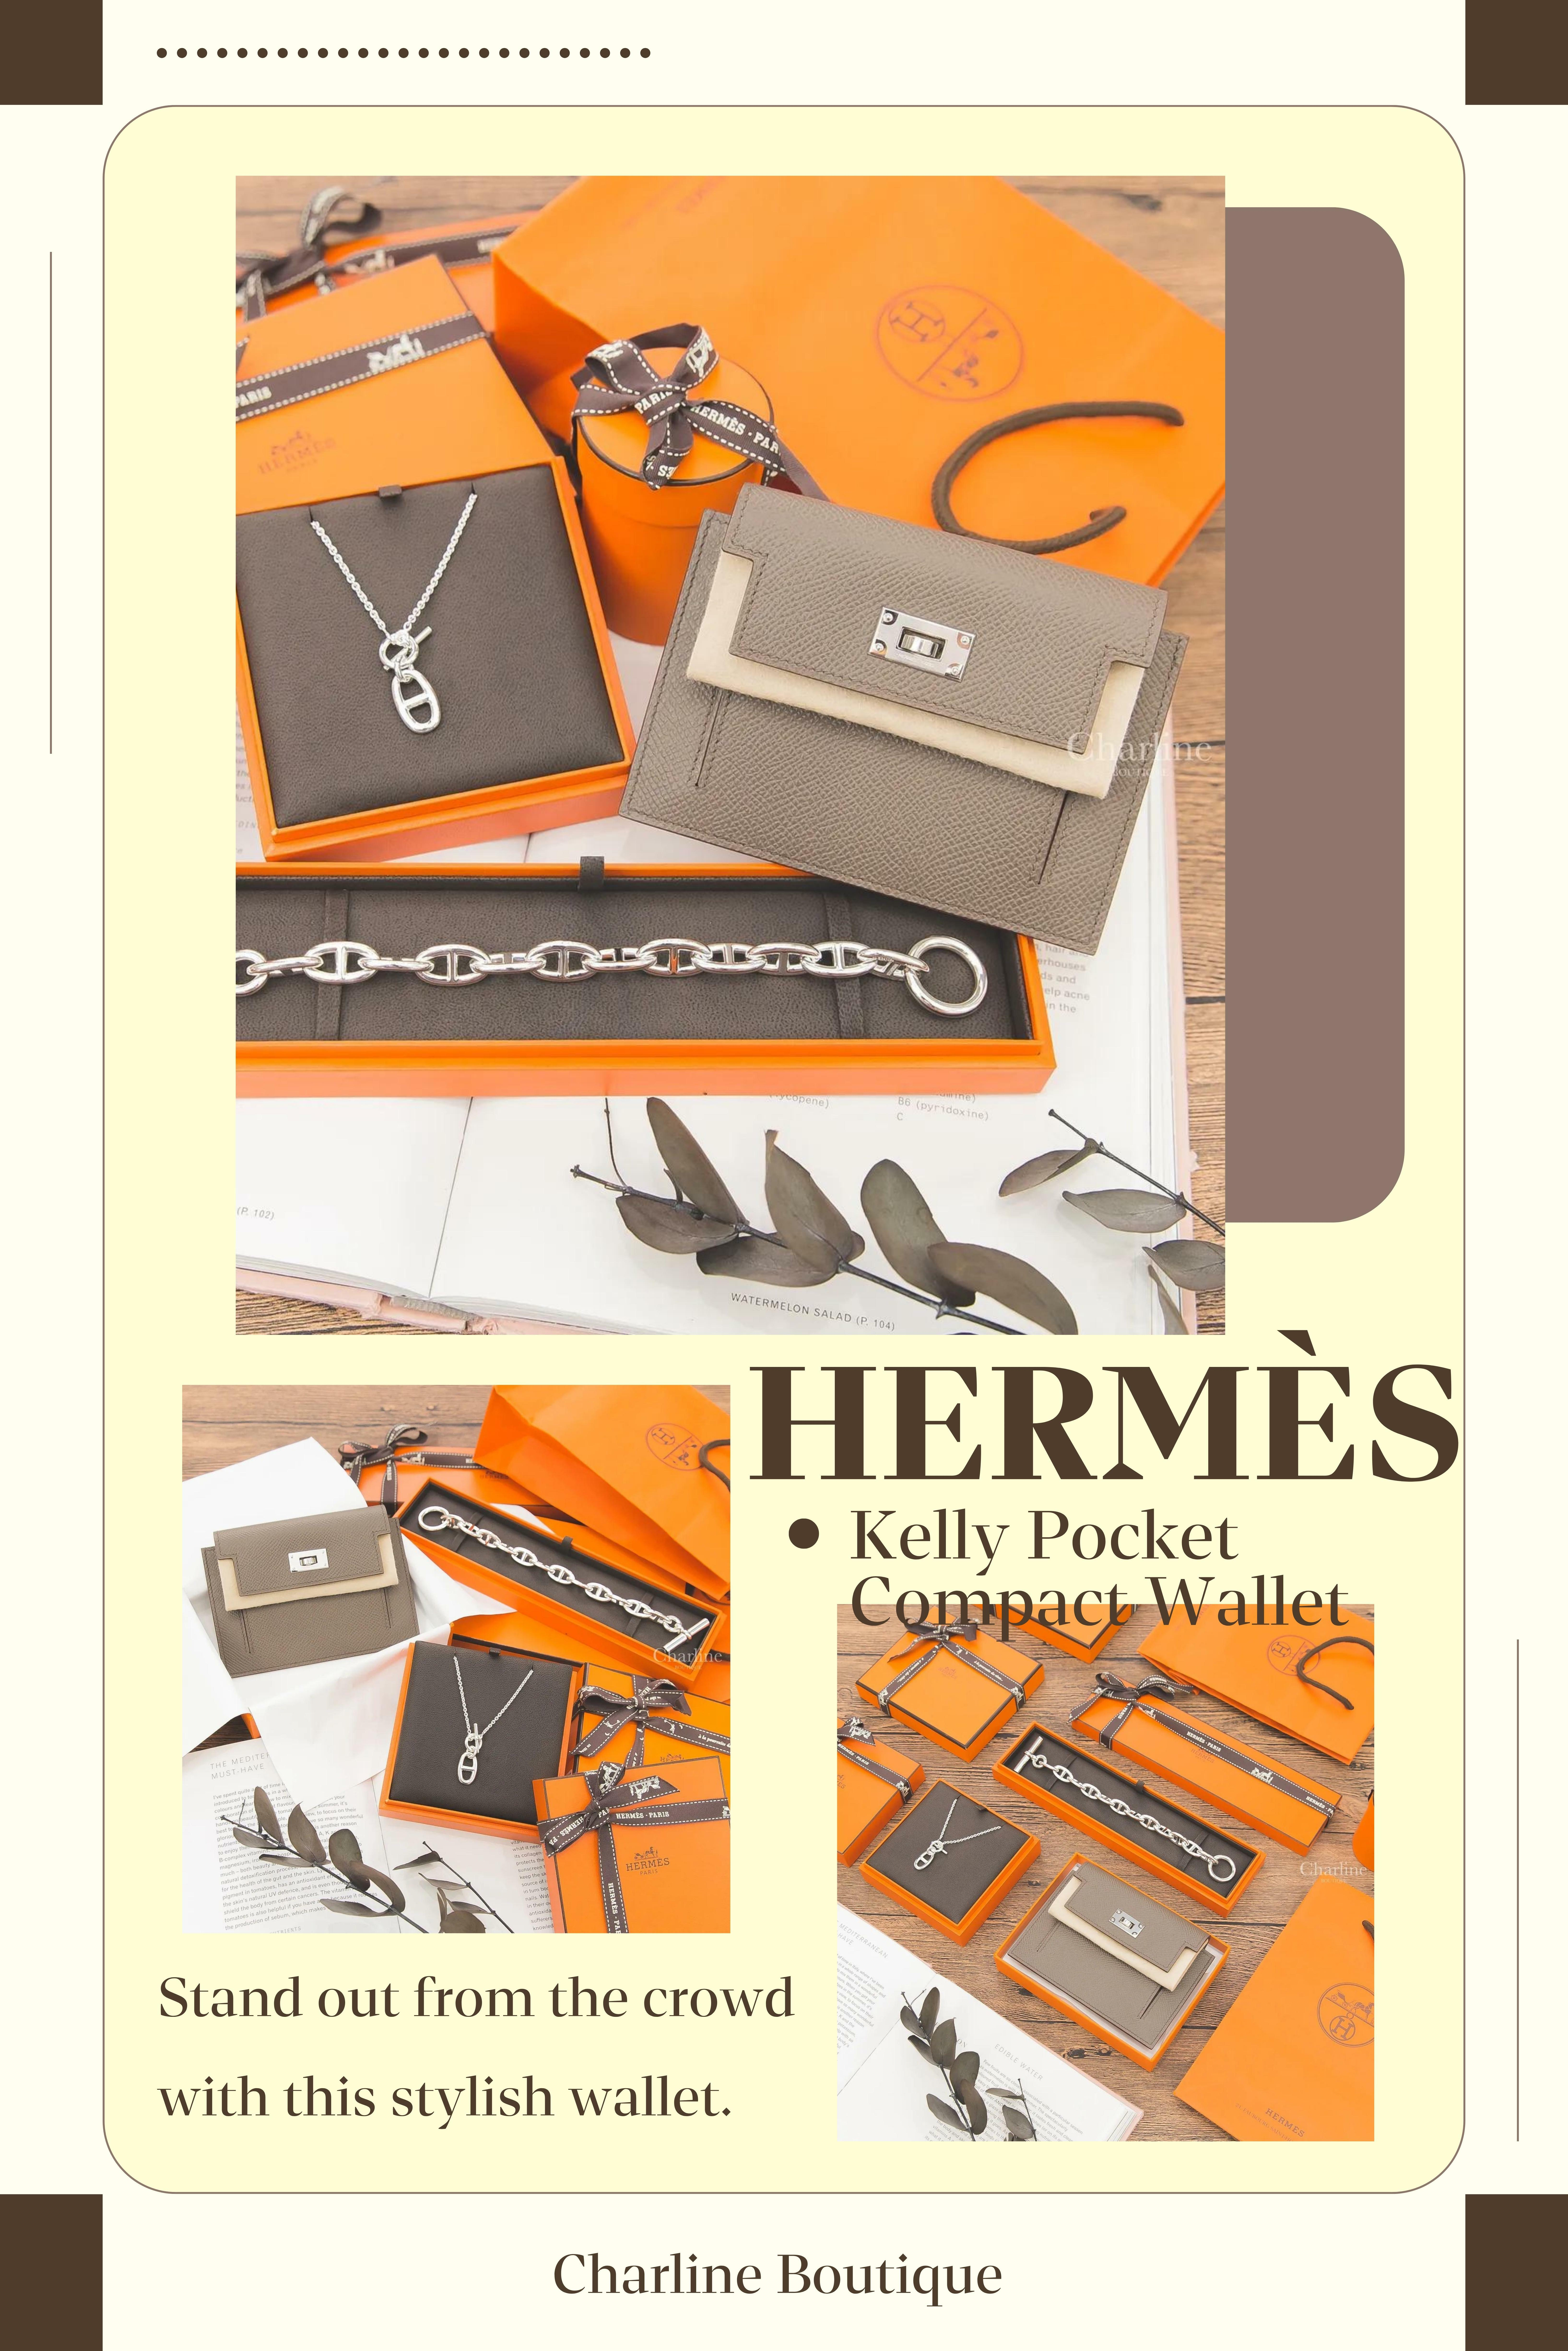 在Hermès的花花世界裡，不僅有令人垂涎的包包，還有一系列令人心癢癢的的小皮件，如皮夾、卡片套、鑰匙圈等。這些小皮件以極簡約的設計深獲我們心，就衝著Hermès的名號皮革質感肯定也是滿分的～因此許多人可能有預算上的限制，就可以先從小皮件入手。每一款小皮件都是Hermès卓越工藝的體現，讓我們在日常細節中感受到品味的奢華。無論是作為自用或獨特禮物，都能為人們帶來無盡的喜悅和自信。接著讓我們來介紹有哪些熱門款式。